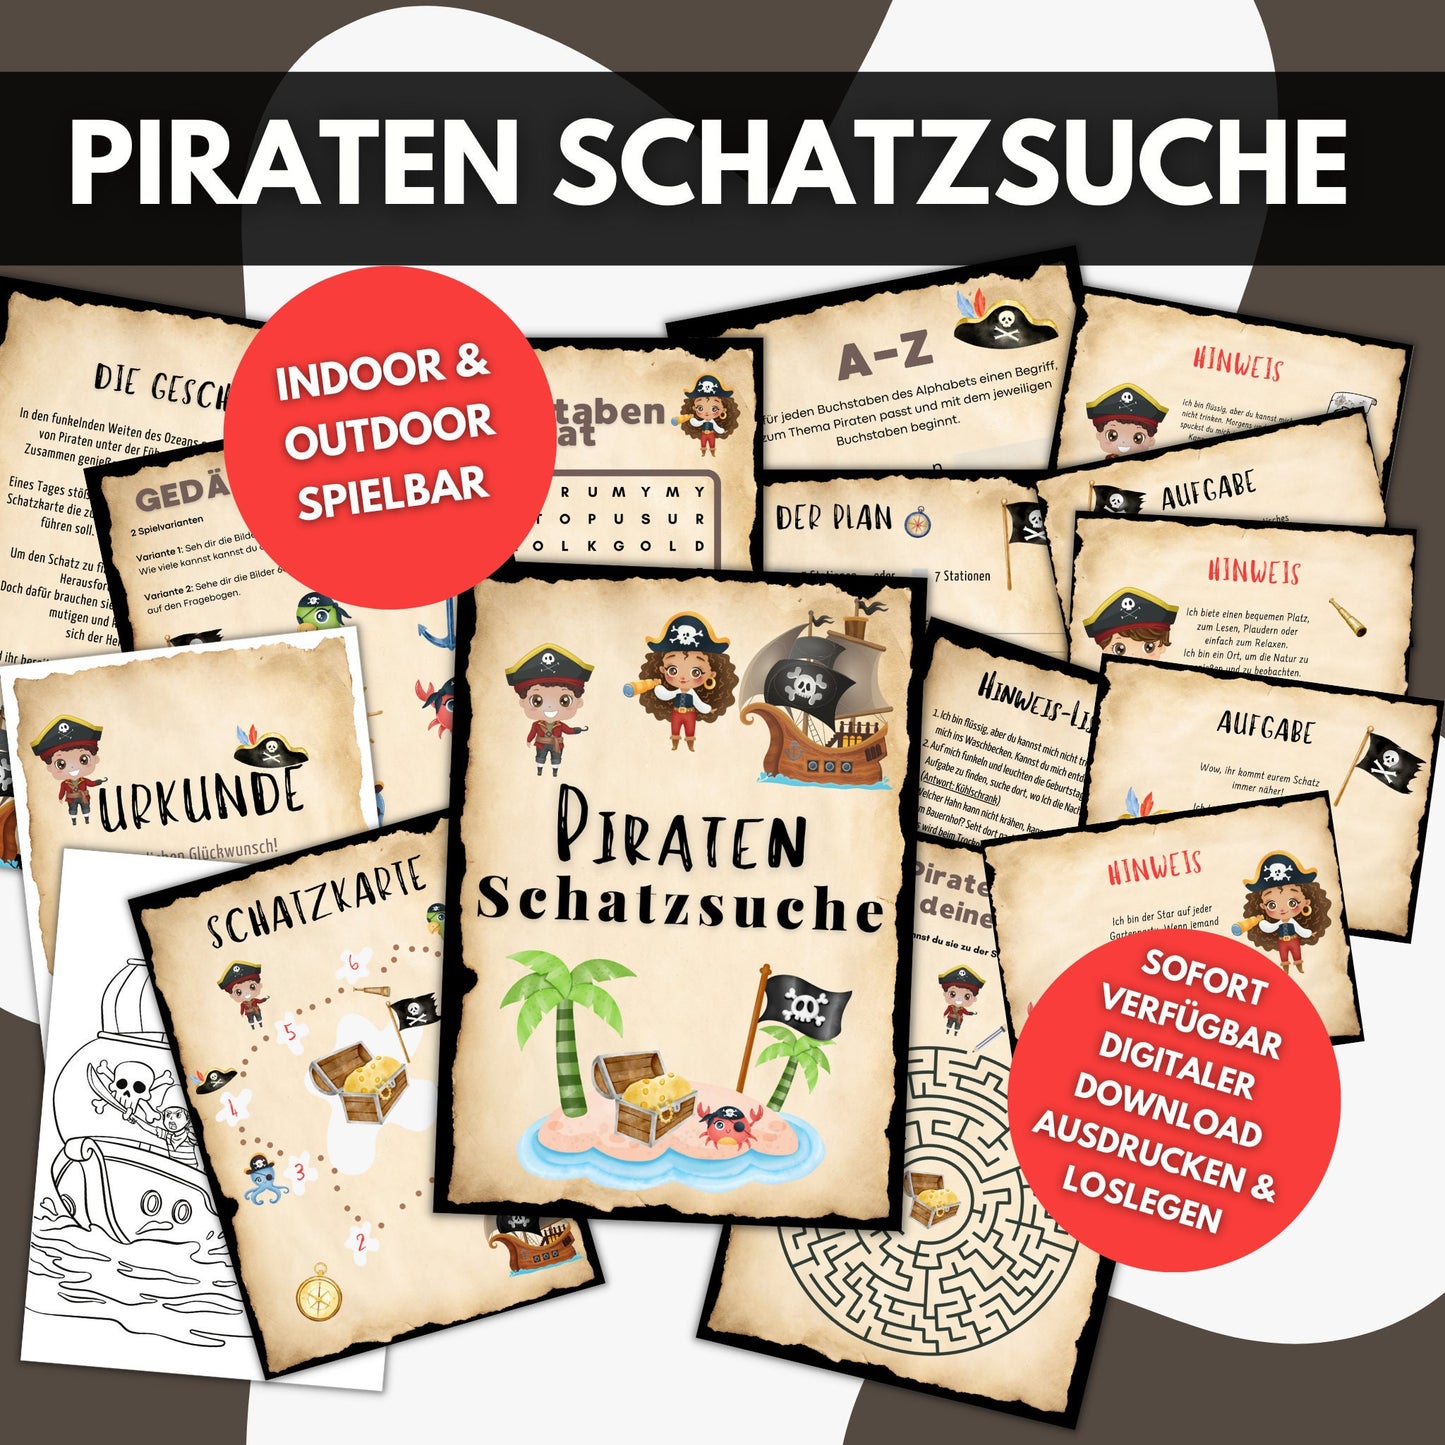 Piraten Schatzsuche Kindergeburtstag Spiele  Rätsel Aufgaben Hinweise Schatzkarte Urkunden Einladungen Indoor Outdoor Schnitzeljagd